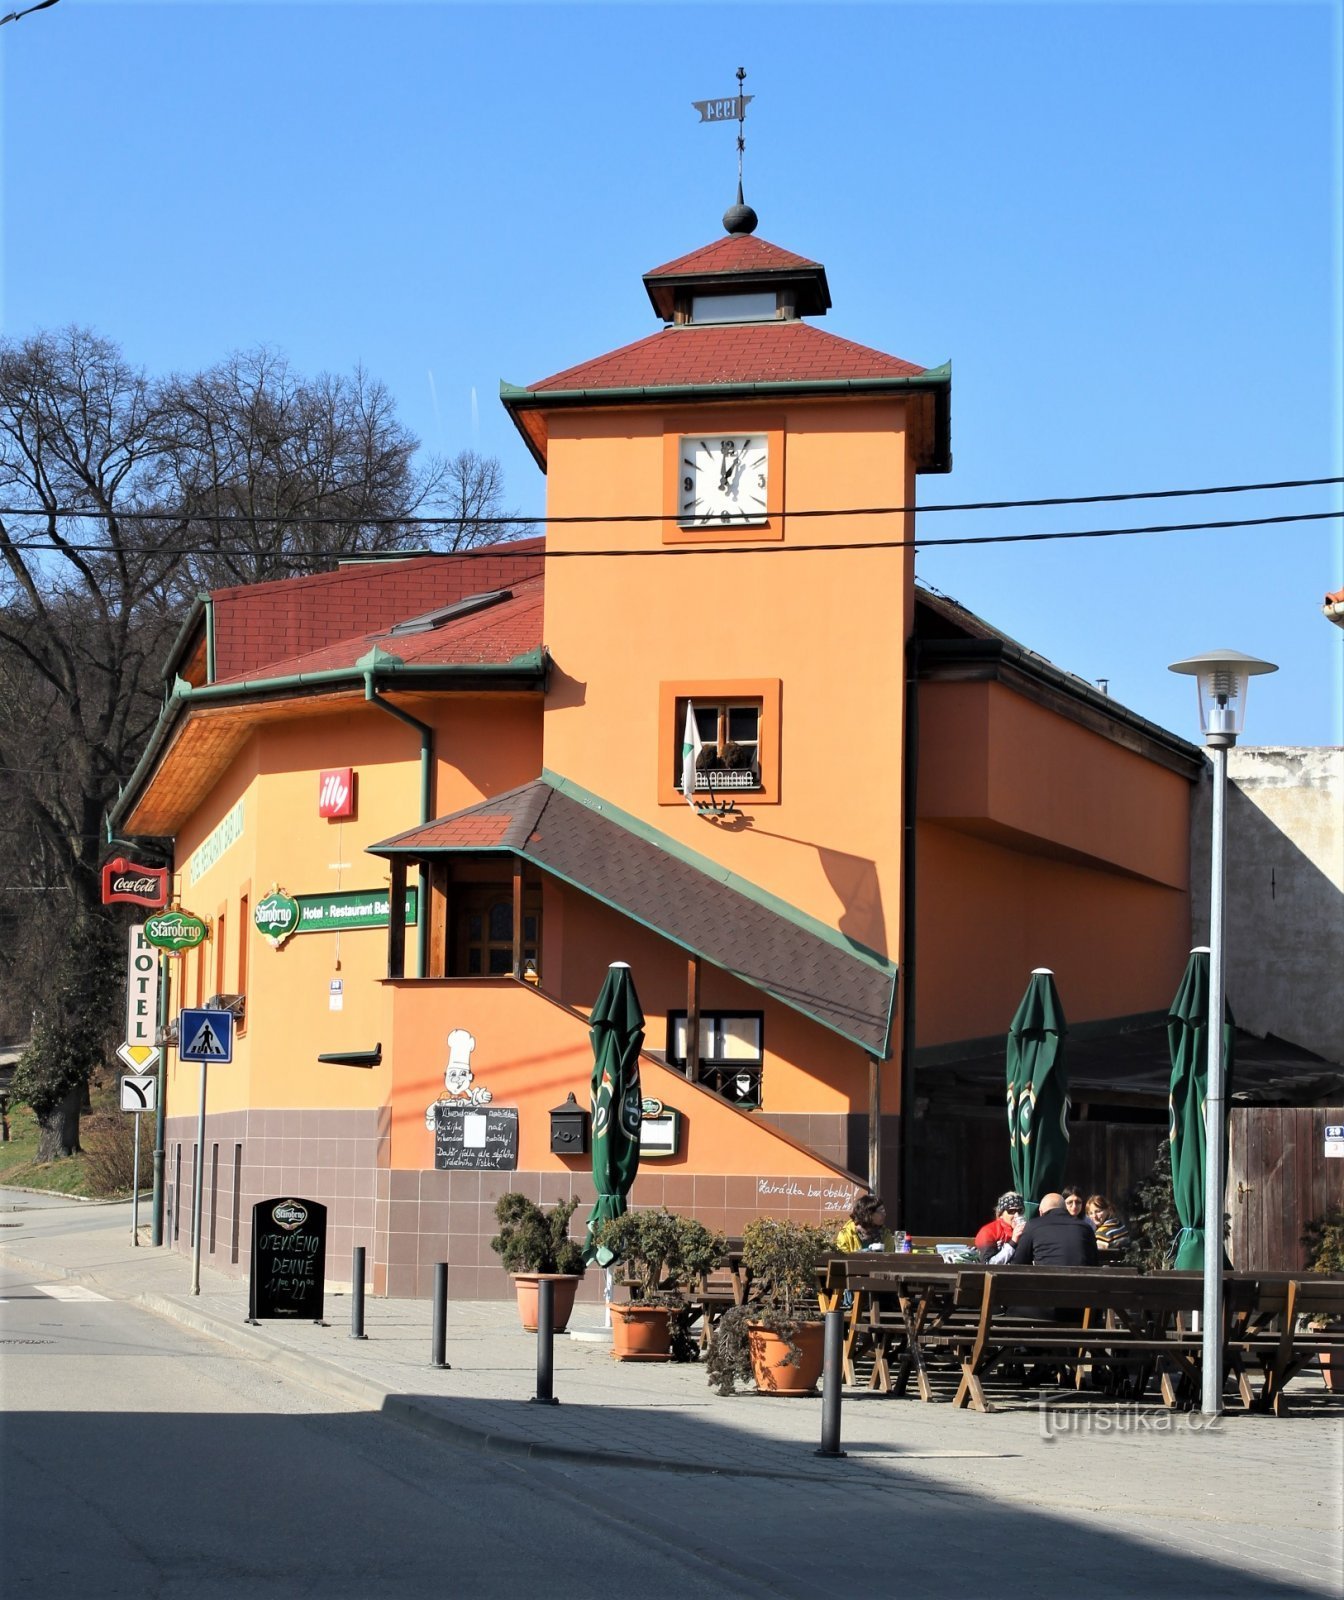 Plimbarea începe în satul Lelekovice, lângă hotelul Babí lom